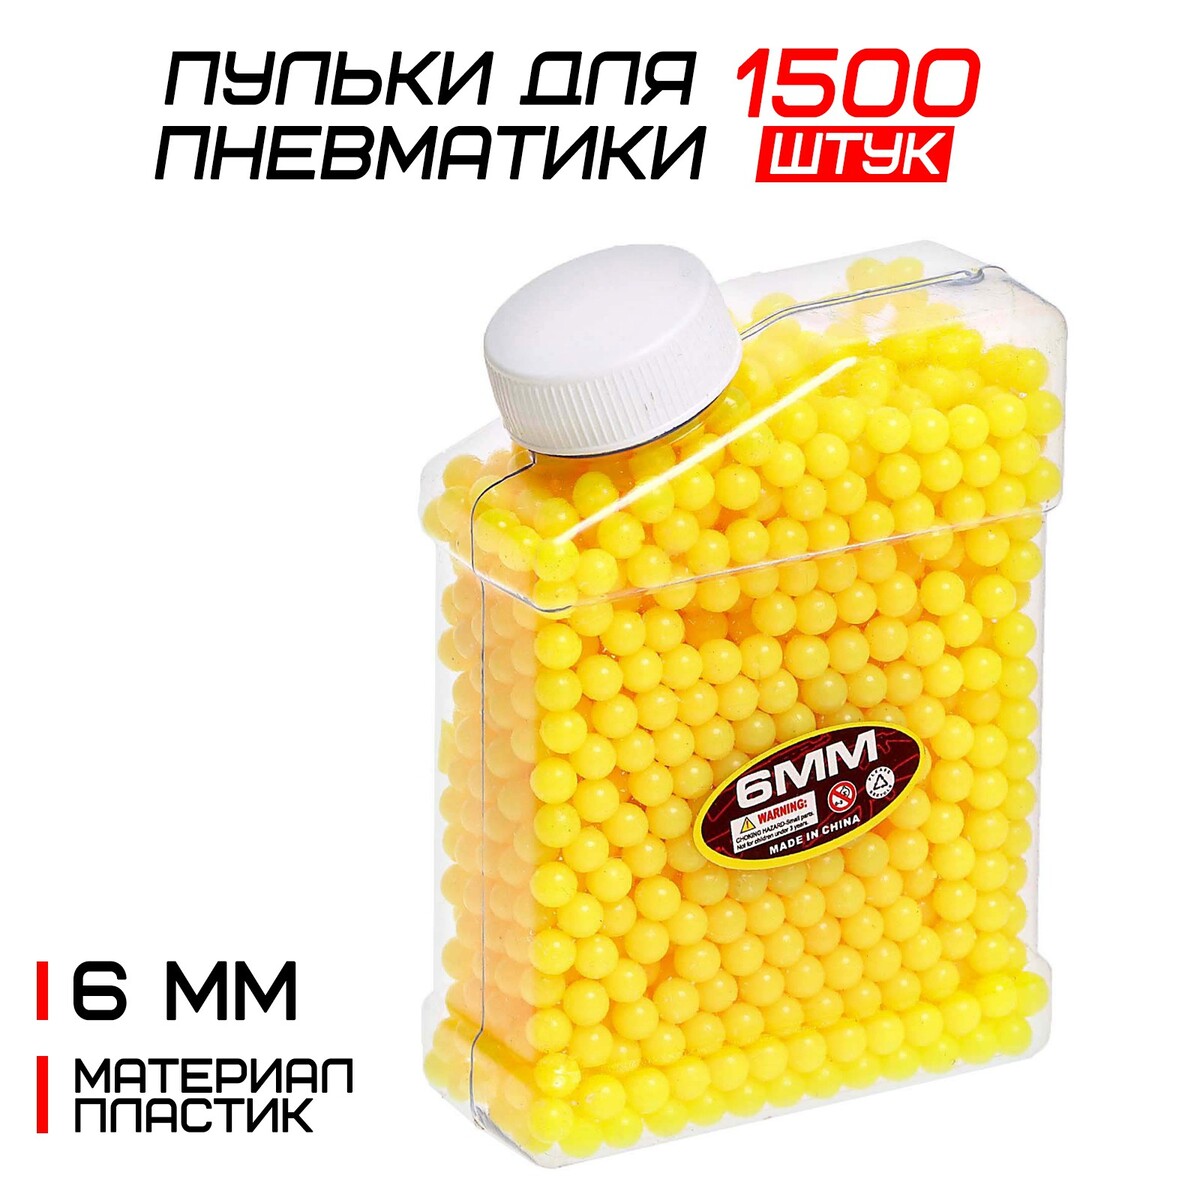 Пульки 6 мм пластиковые, 1500 шт., желтые, в банке